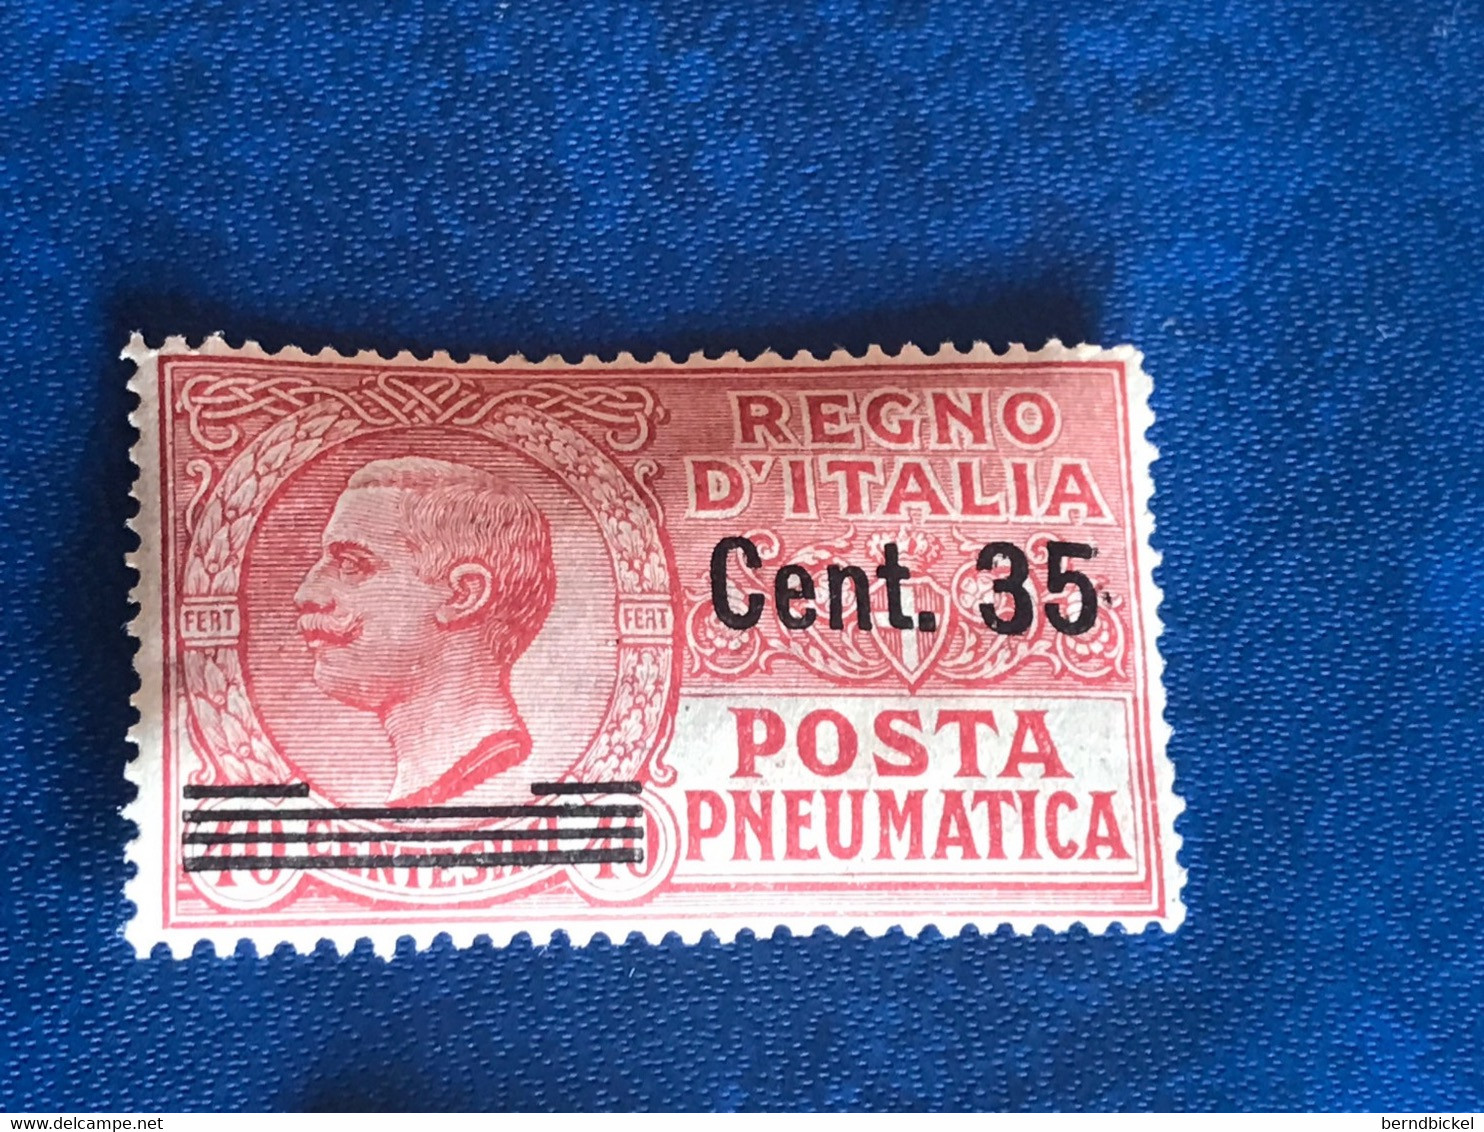 Italien 35 Centisimi Überdruck 40 Centesimi 1927 Postfrisch Michel 269 - Poste Pneumatique